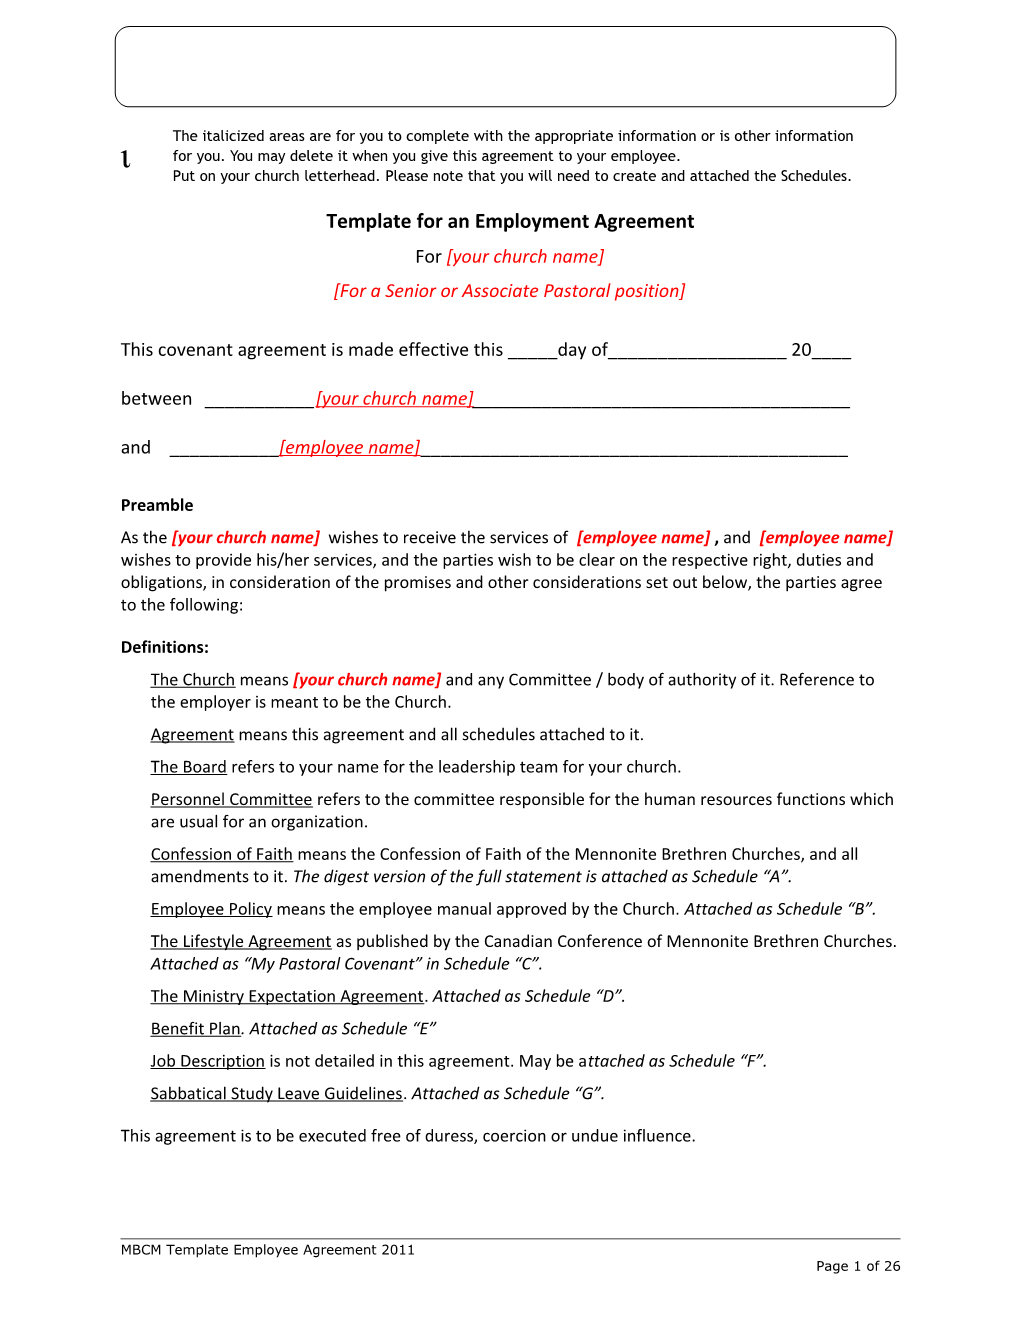 Sample Employee Contract